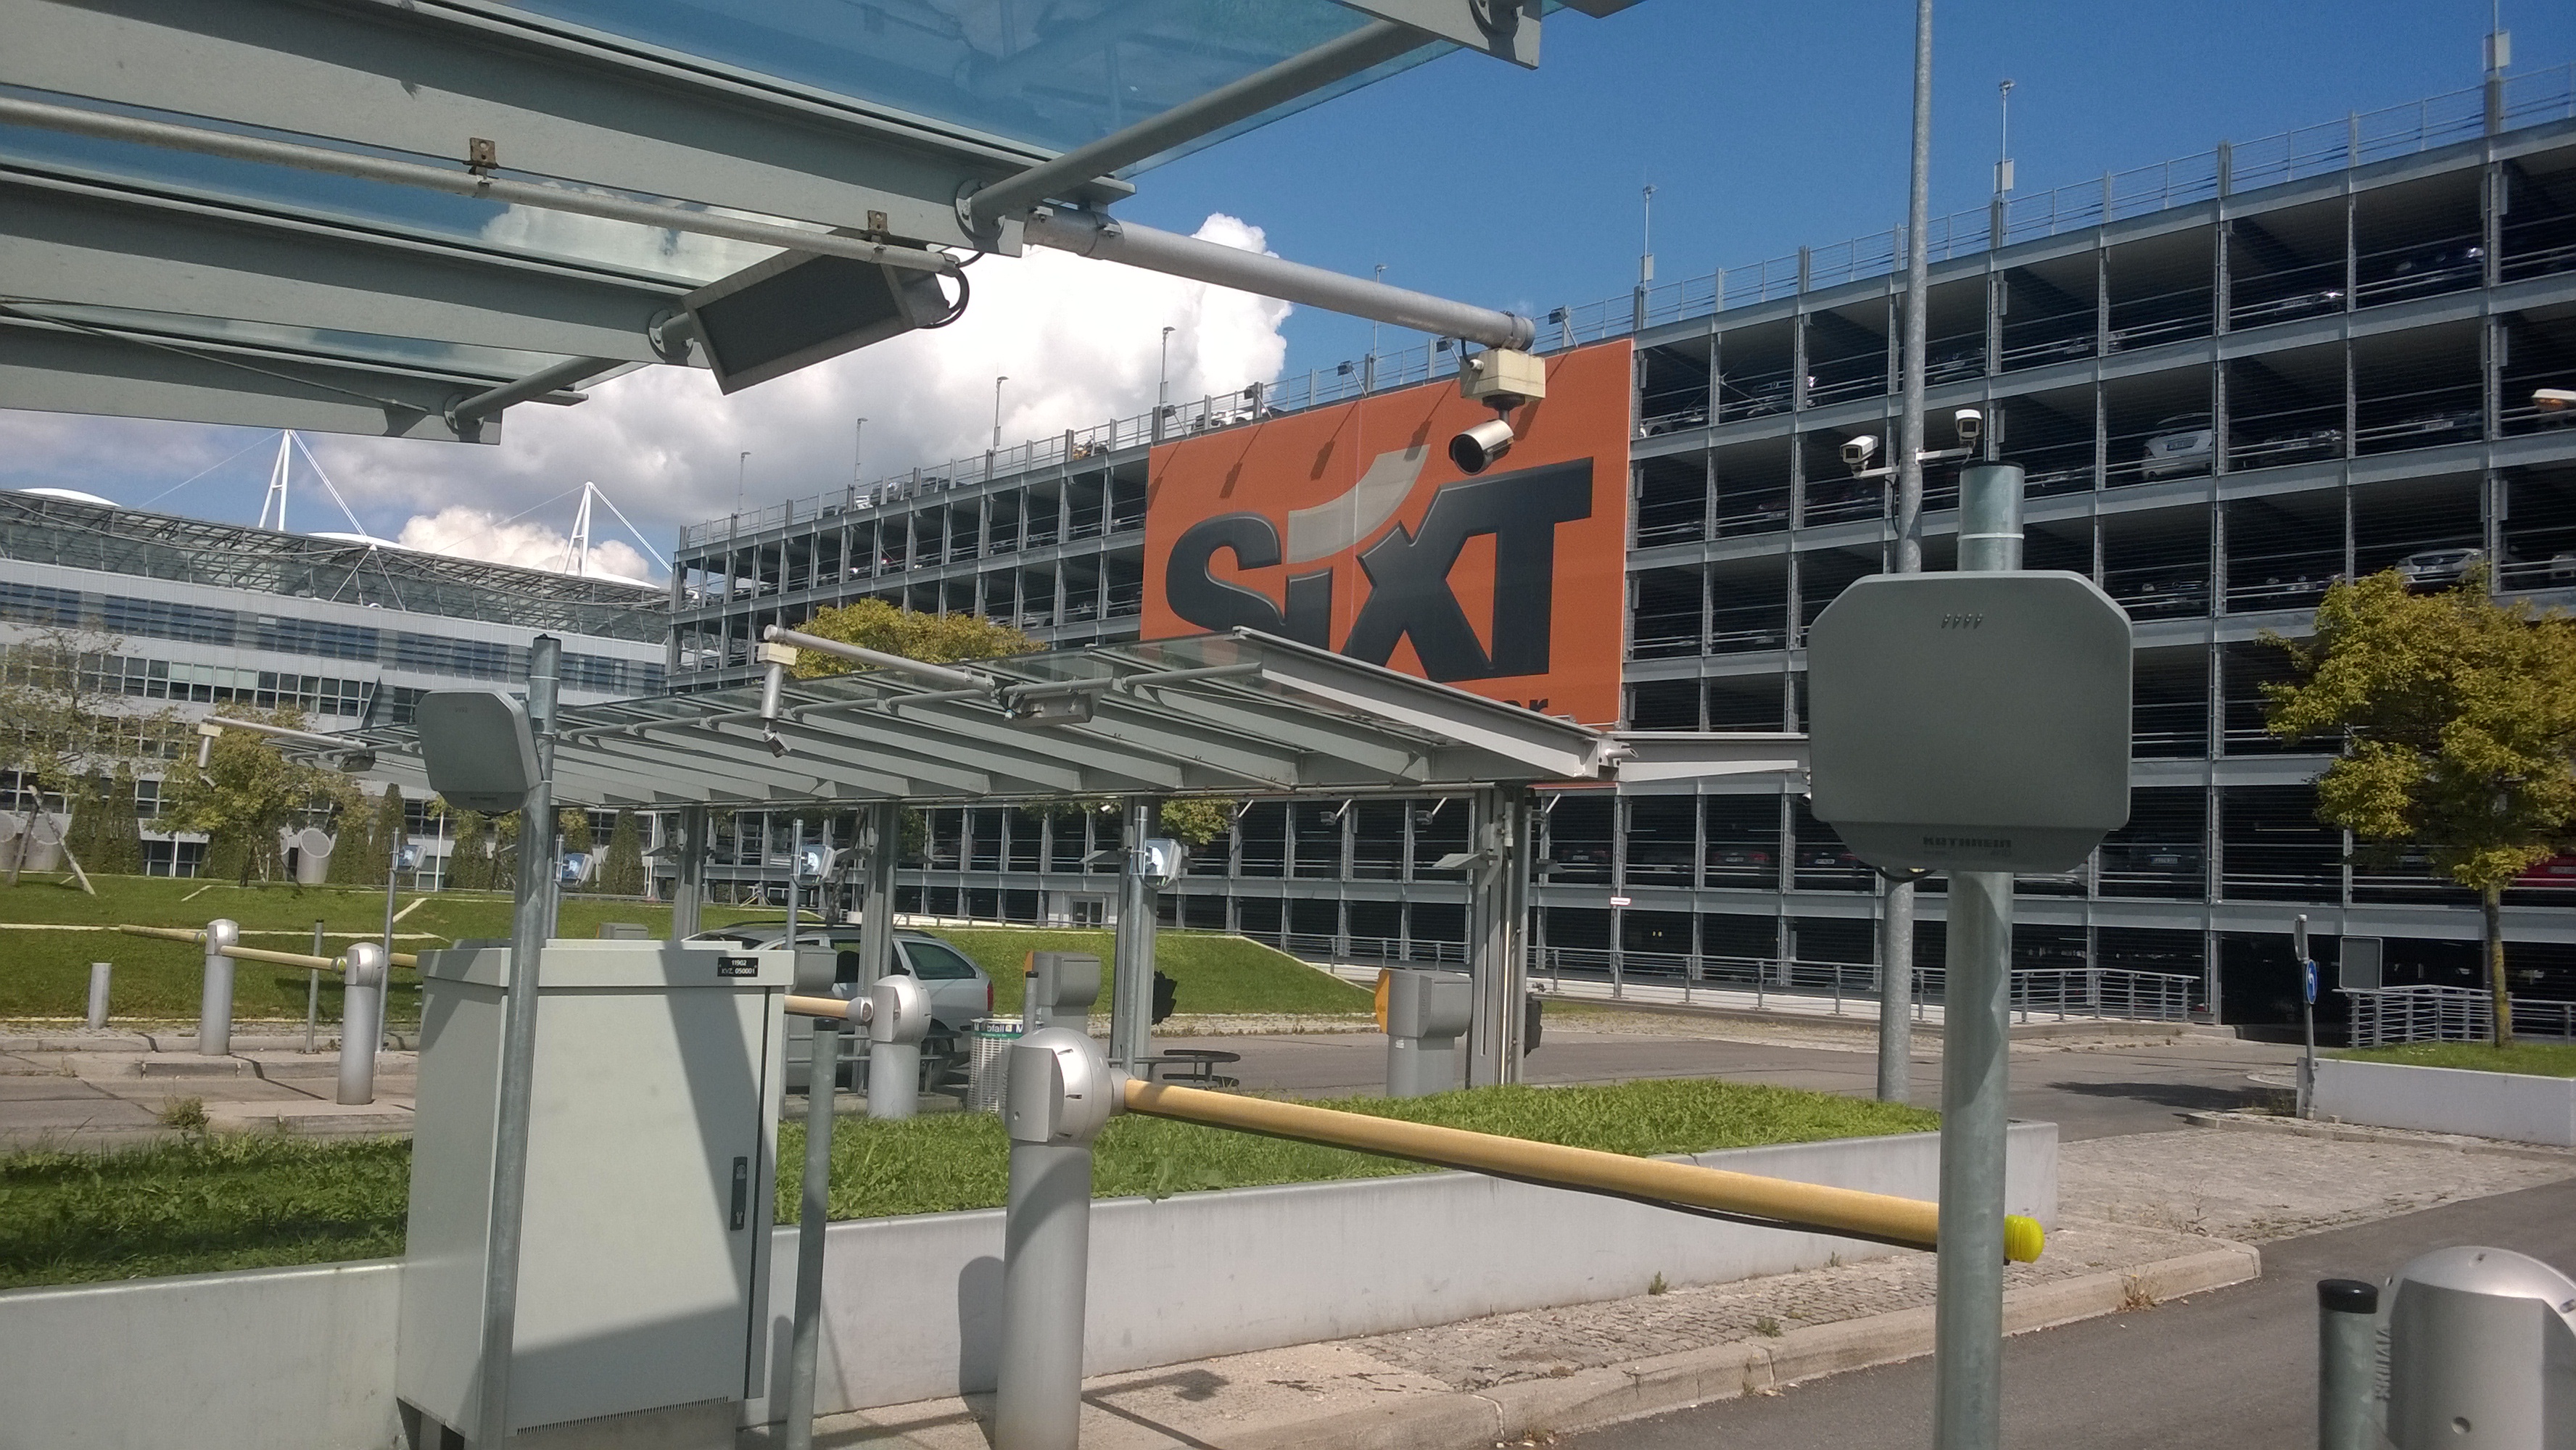 Kathrein RFID equips Munich Airport with RFID UHF AVI 